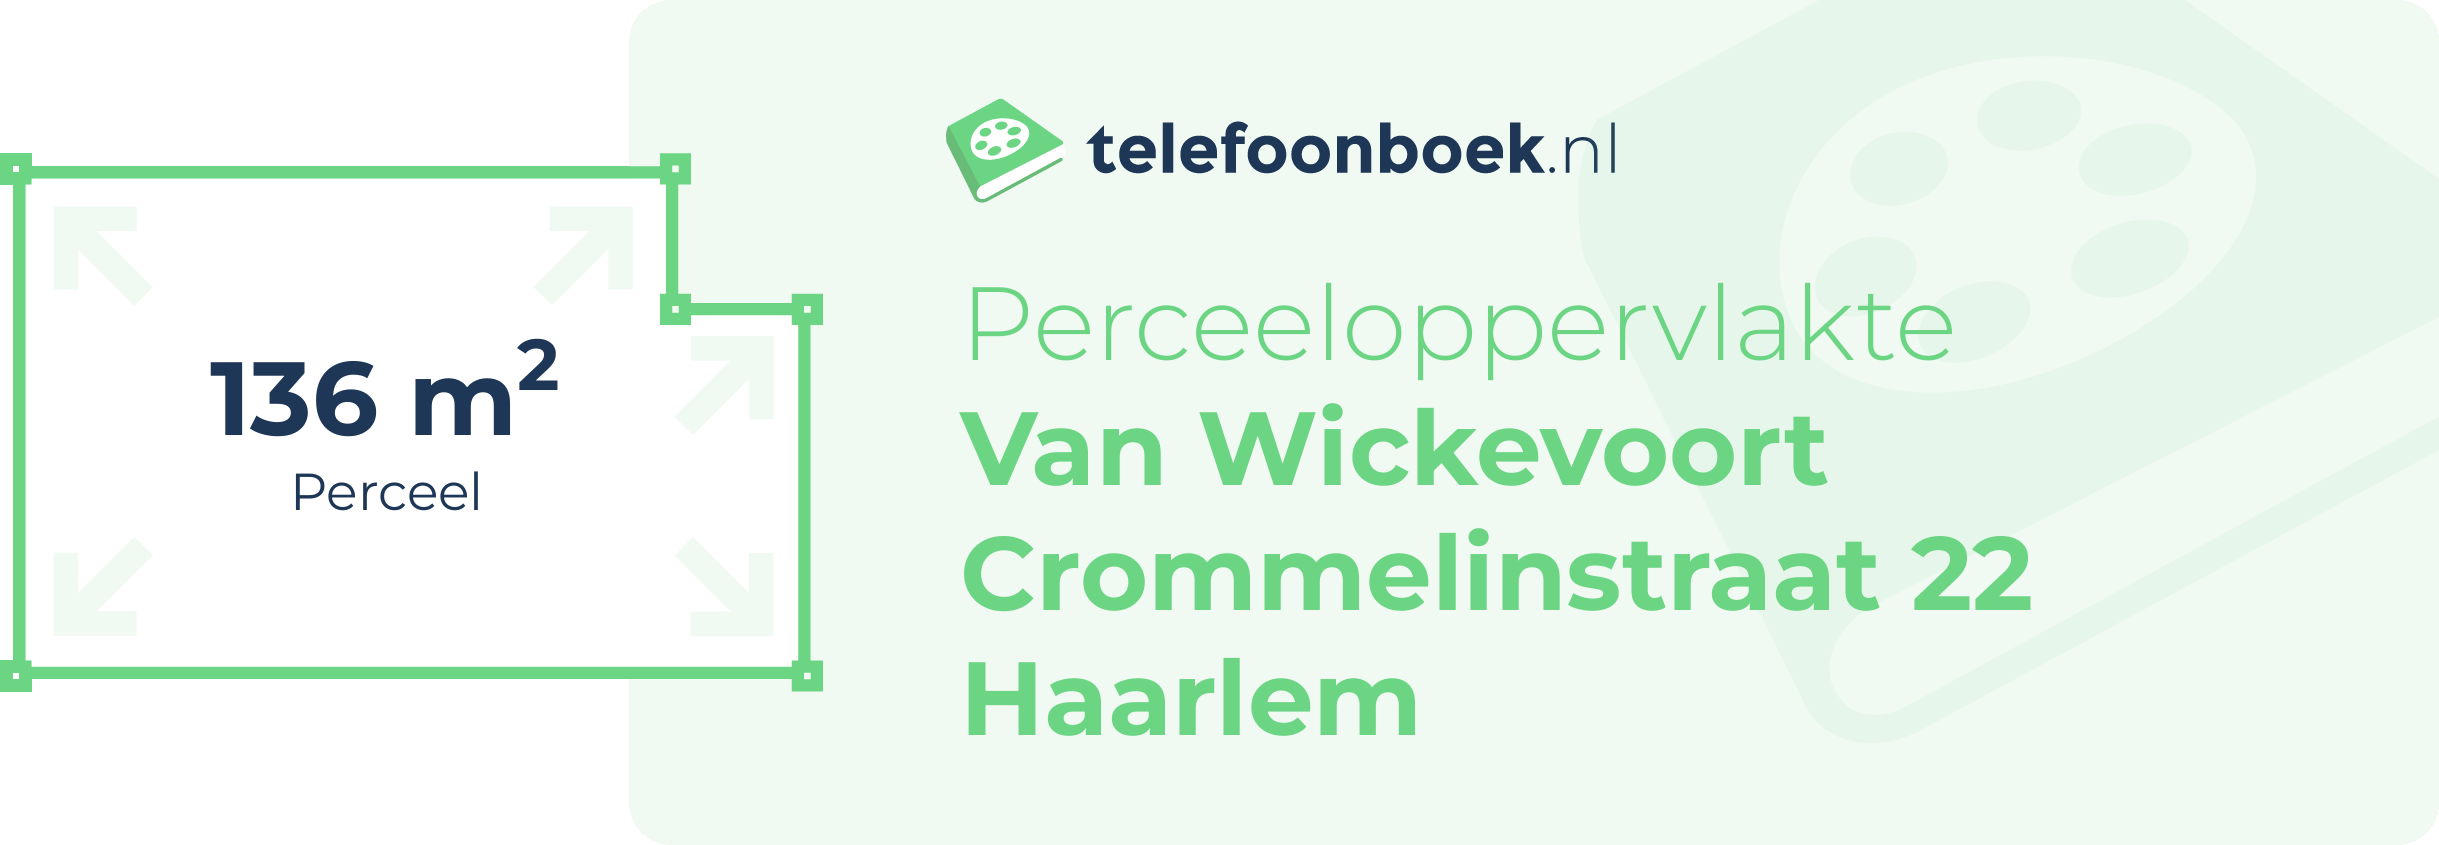 Perceeloppervlakte Van Wickevoort Crommelinstraat 22 Haarlem